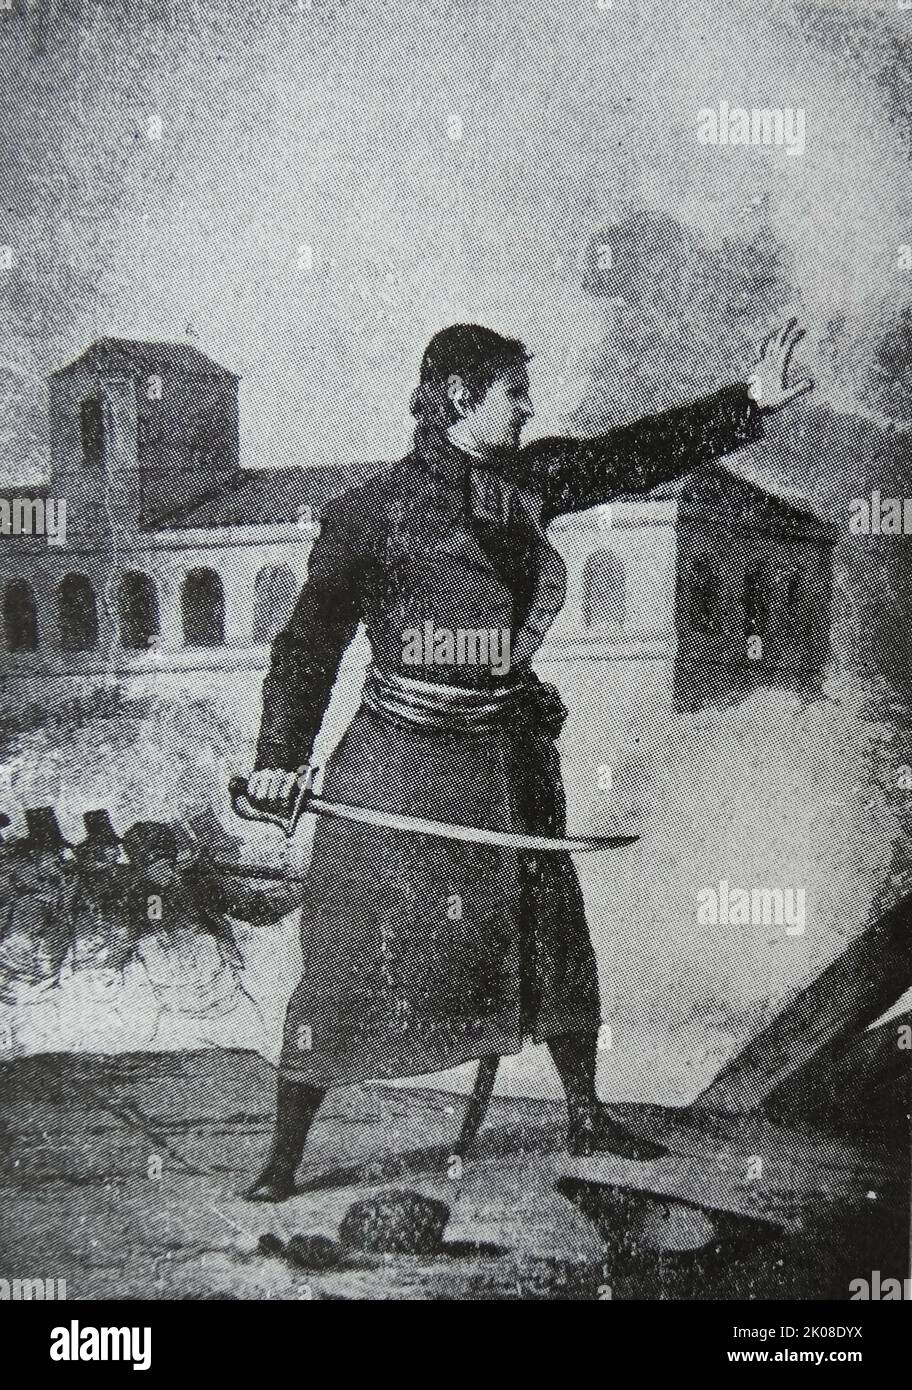 Santiago SAS y Casayau, nato a Saragozza, nel 1774 e morto a Saragozza nel 1809. Clergyman aragonese che si distinse nella difesa di Saragozza durante i sieges nella guerra di indipendenza spagnola Foto Stock